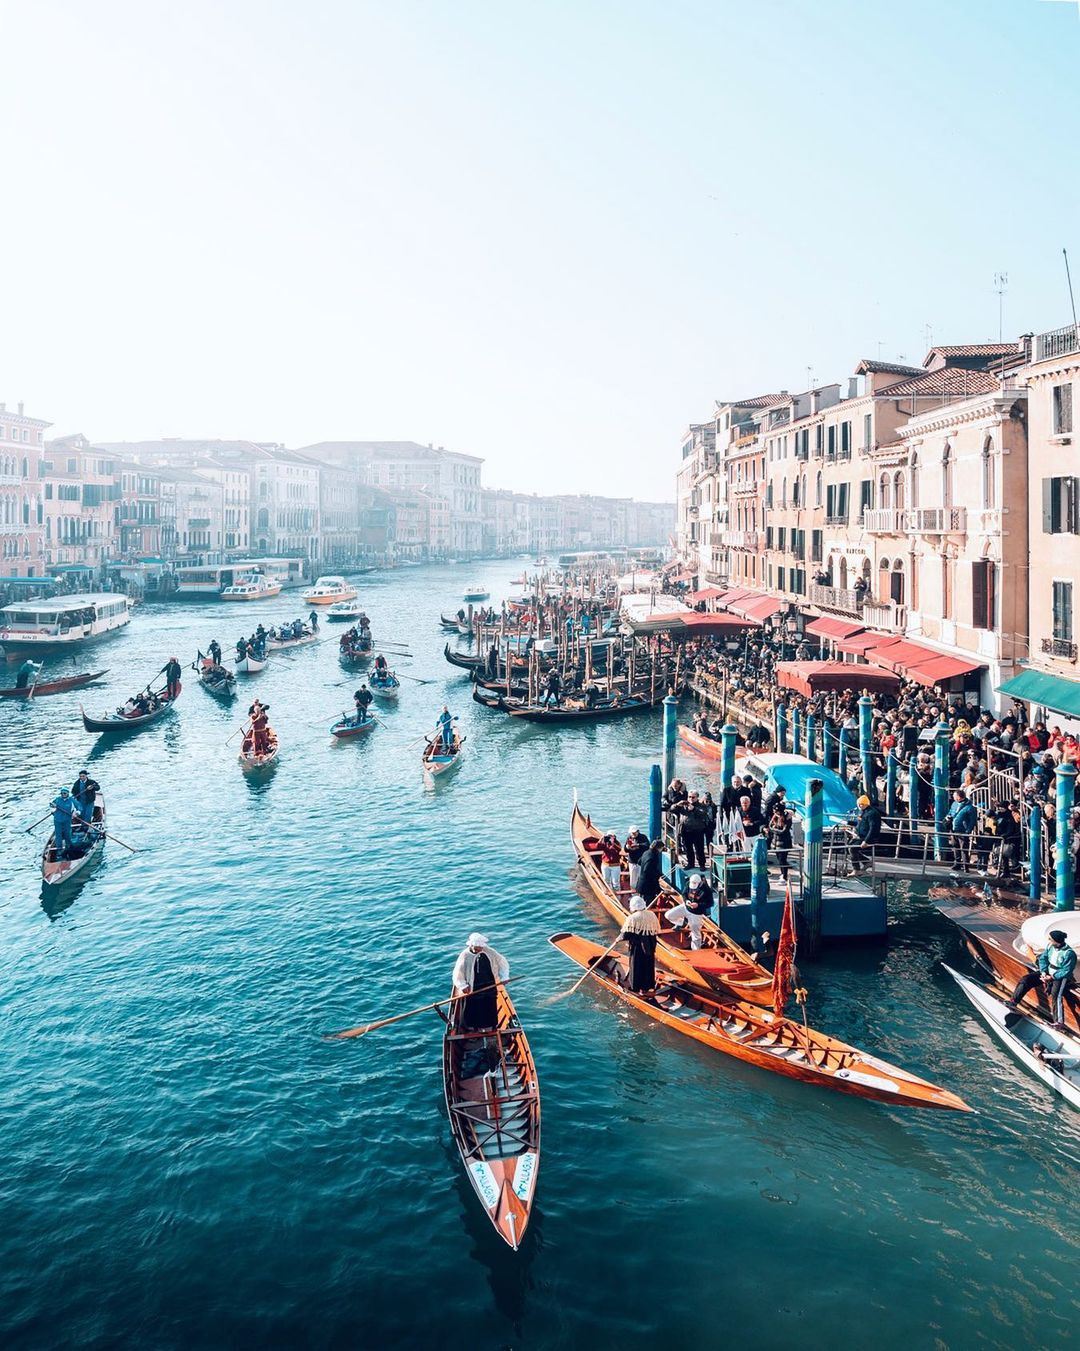 Венеция на уличных и архитектурных снимках Марко Гаджио